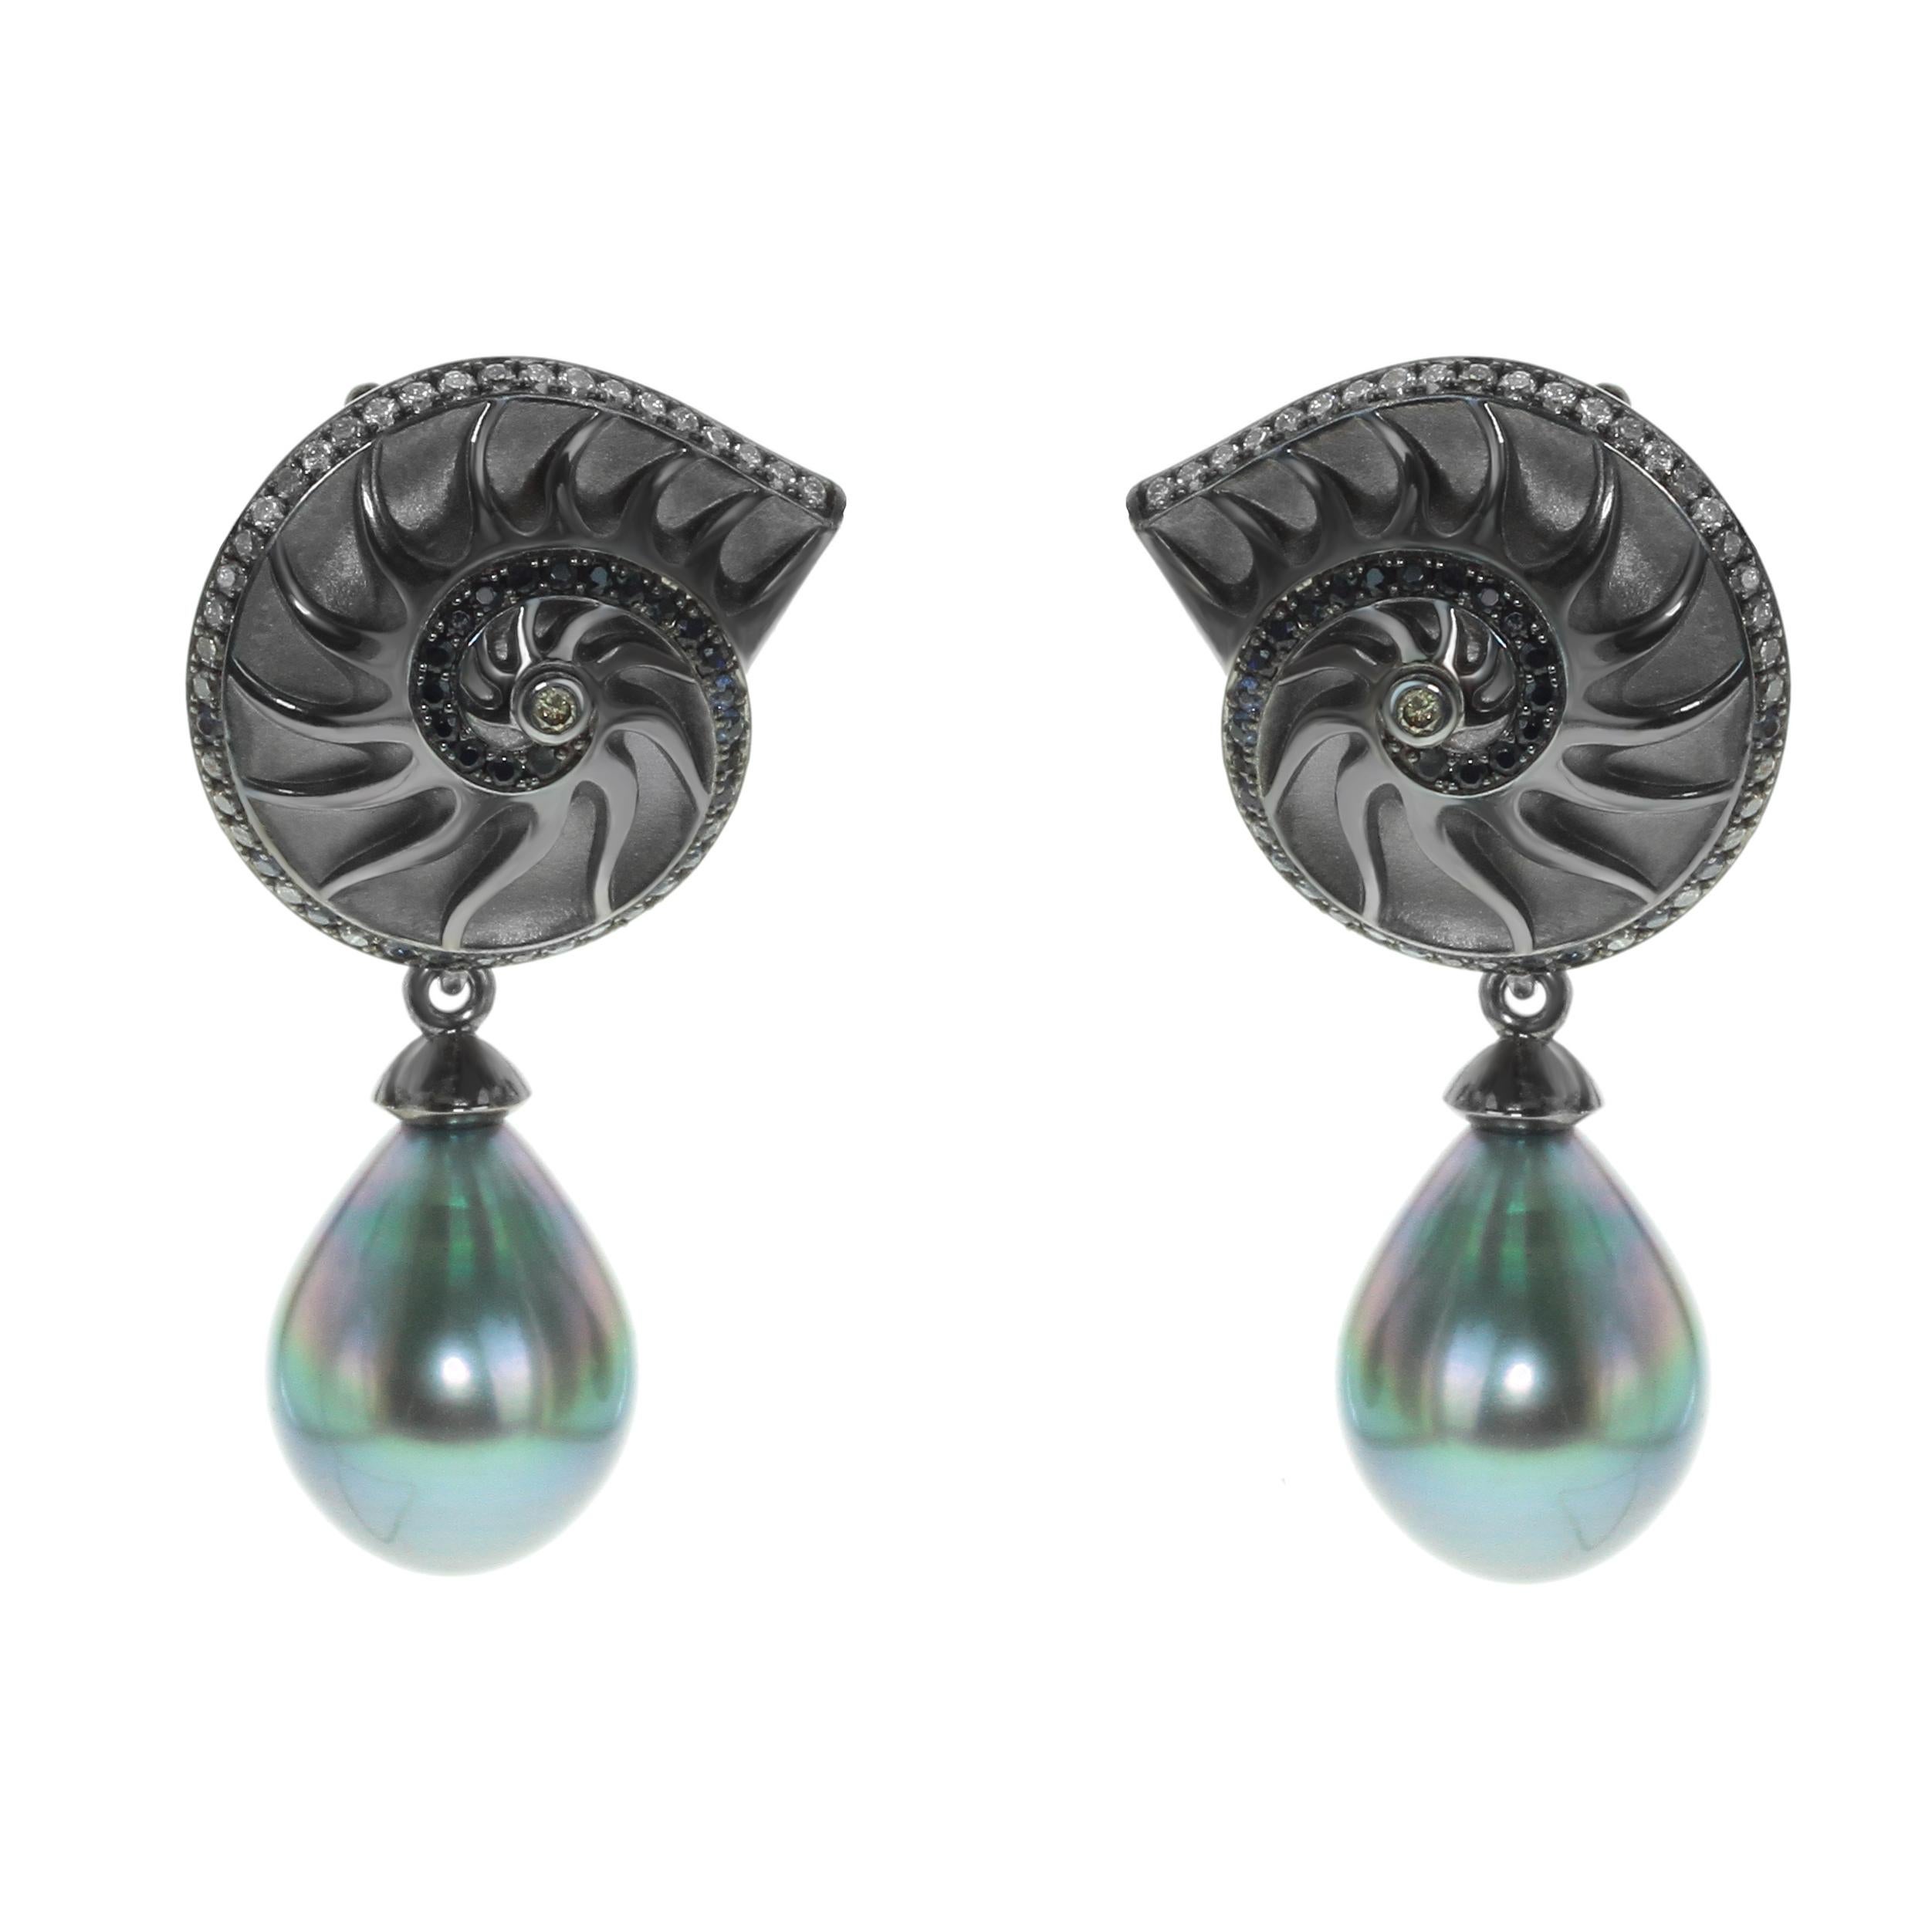 Boucles d'oreilles coquillages en or noir 18 carats avec diamants, saphirs et perles de Tahiti